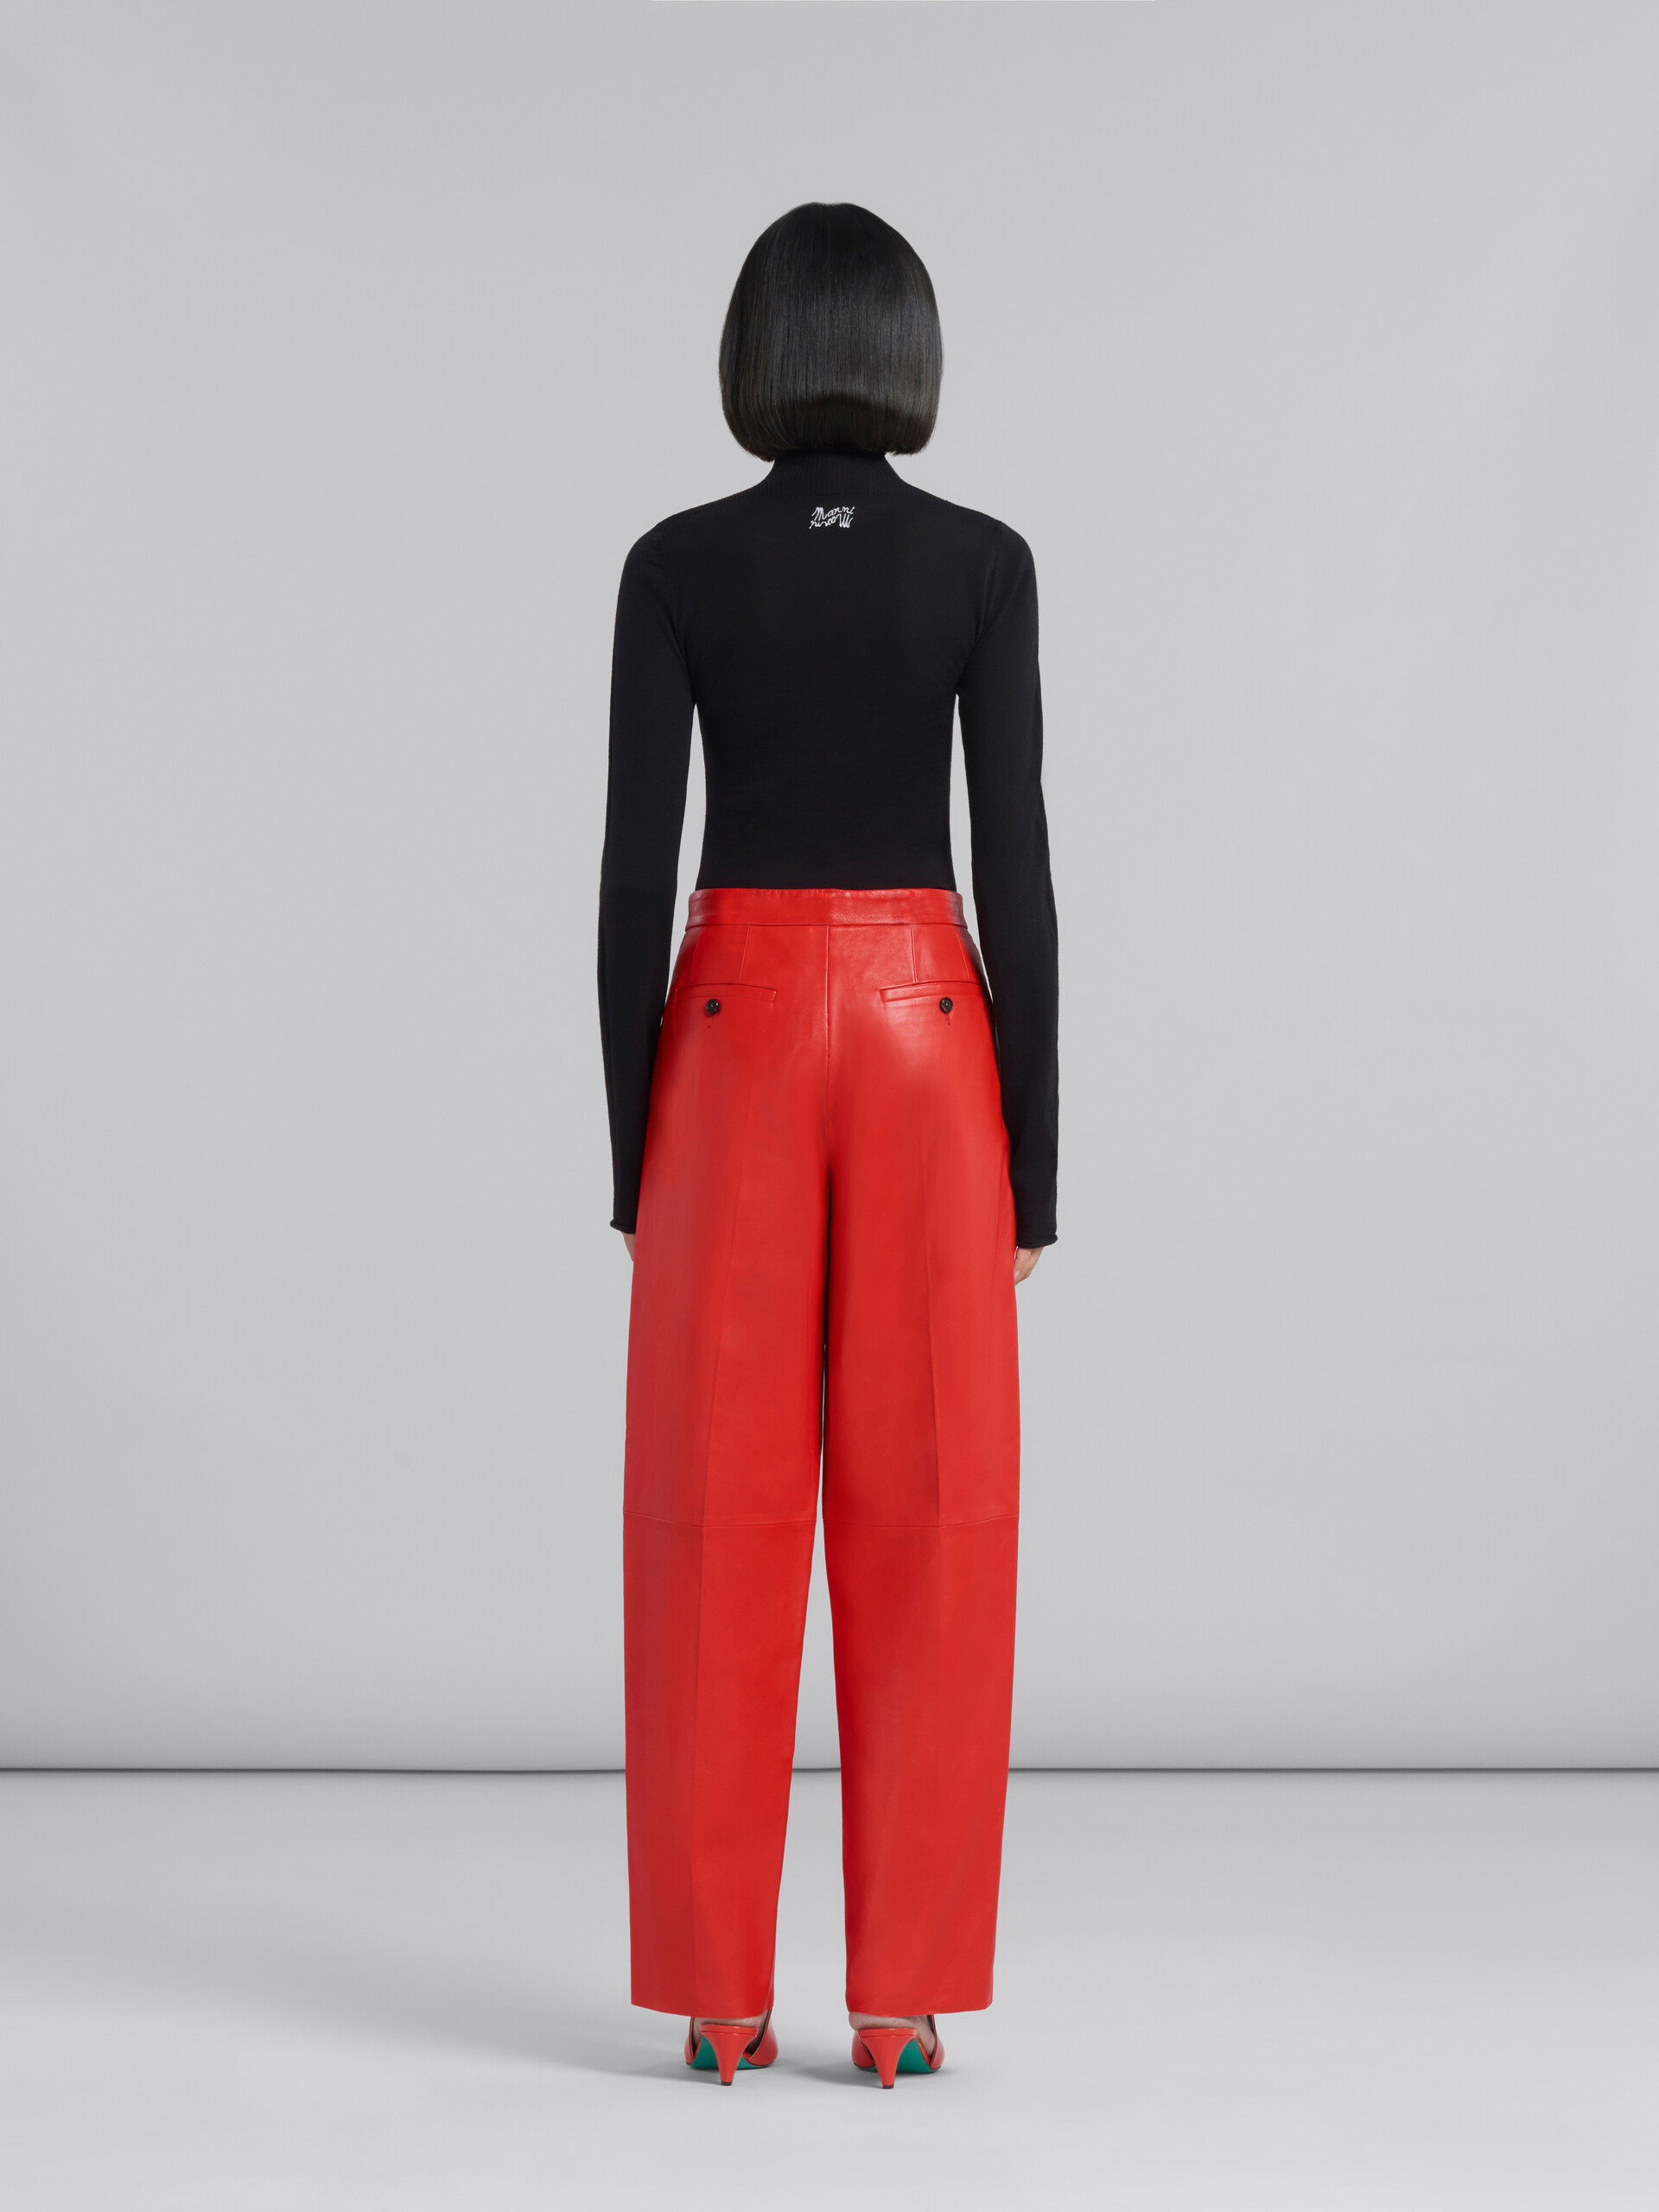 Pantalón de sastre rojo de piel de napa - Pantalones - Image 3